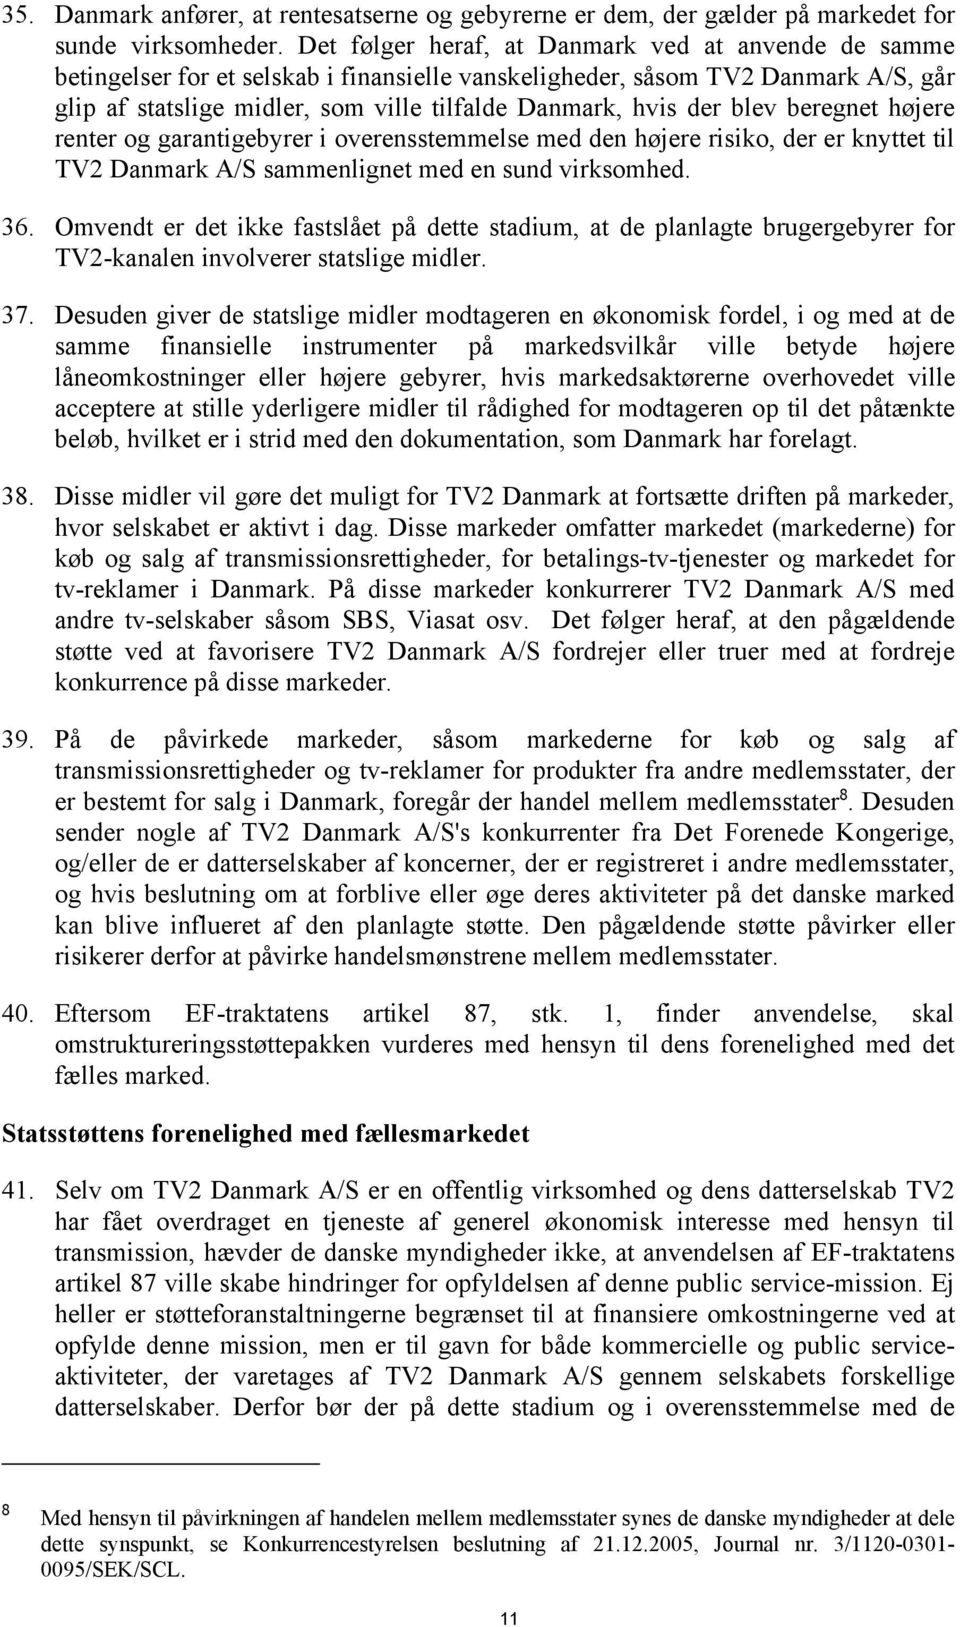 blev beregnet højere renter og garantigebyrer i overensstemmelse med den højere risiko, der er knyttet til TV2 Danmark A/S sammenlignet med en sund virksomhed. 36.